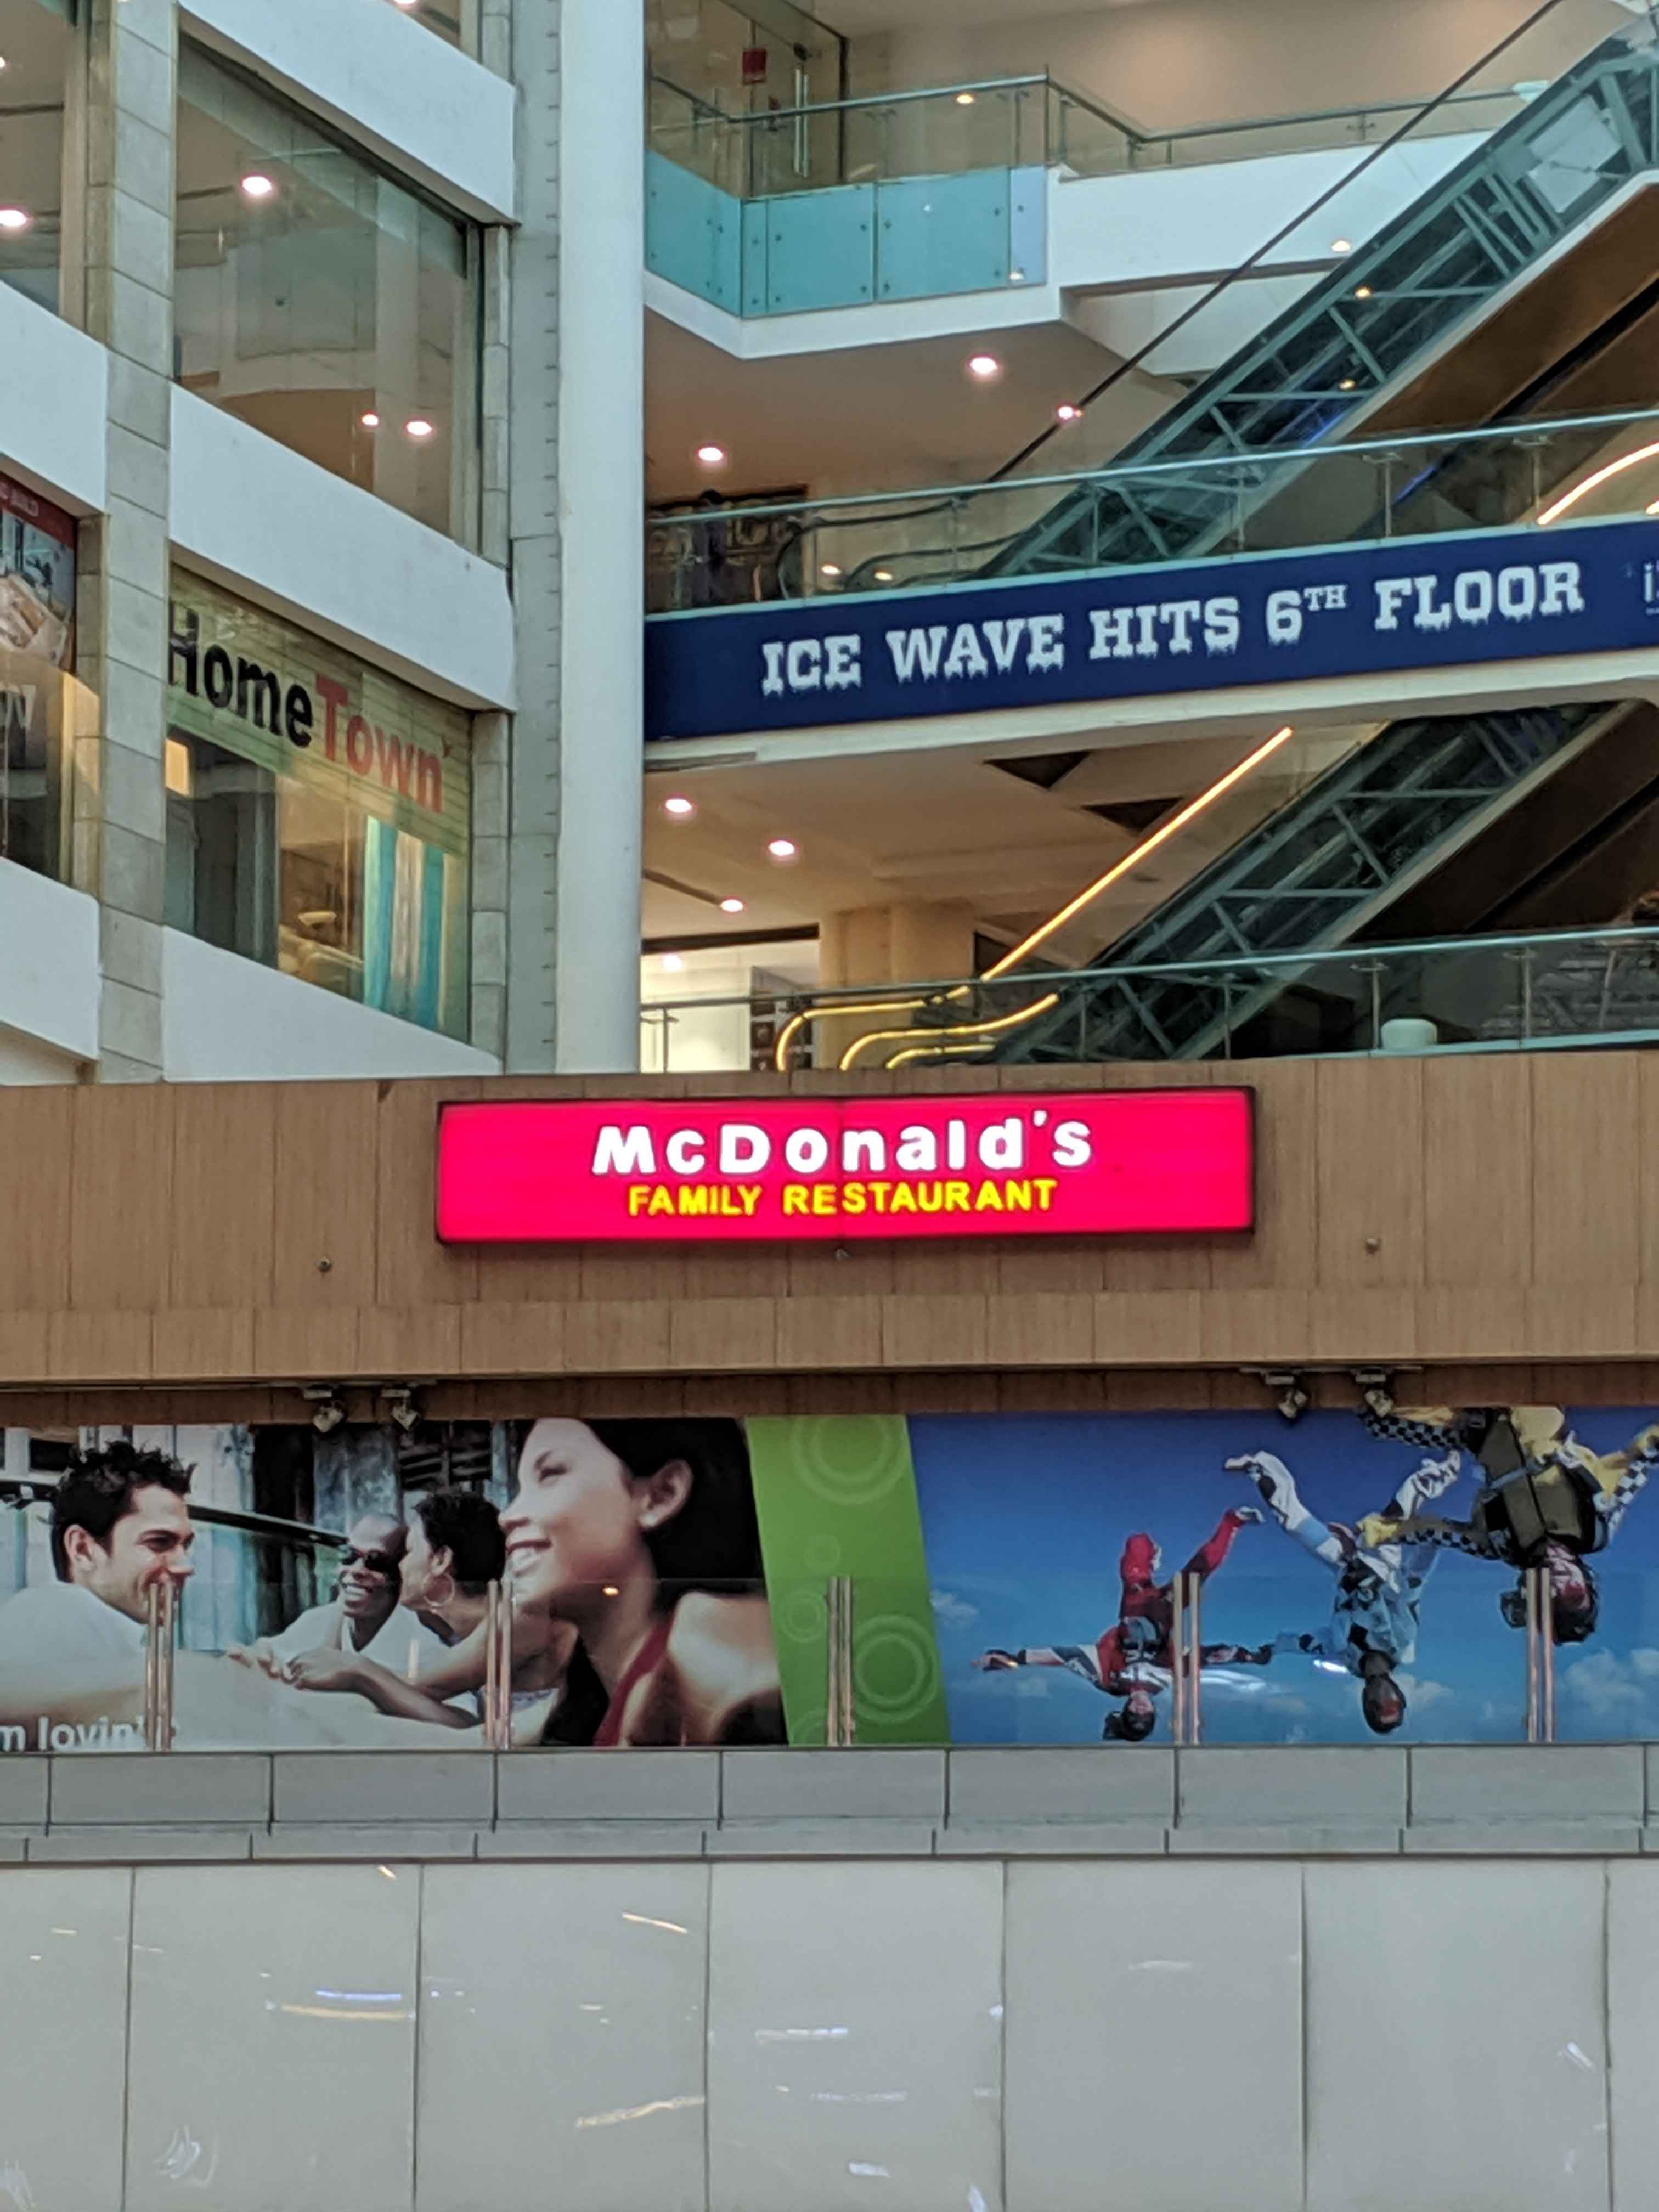 Singapore McDonald's - an unexpected dining option